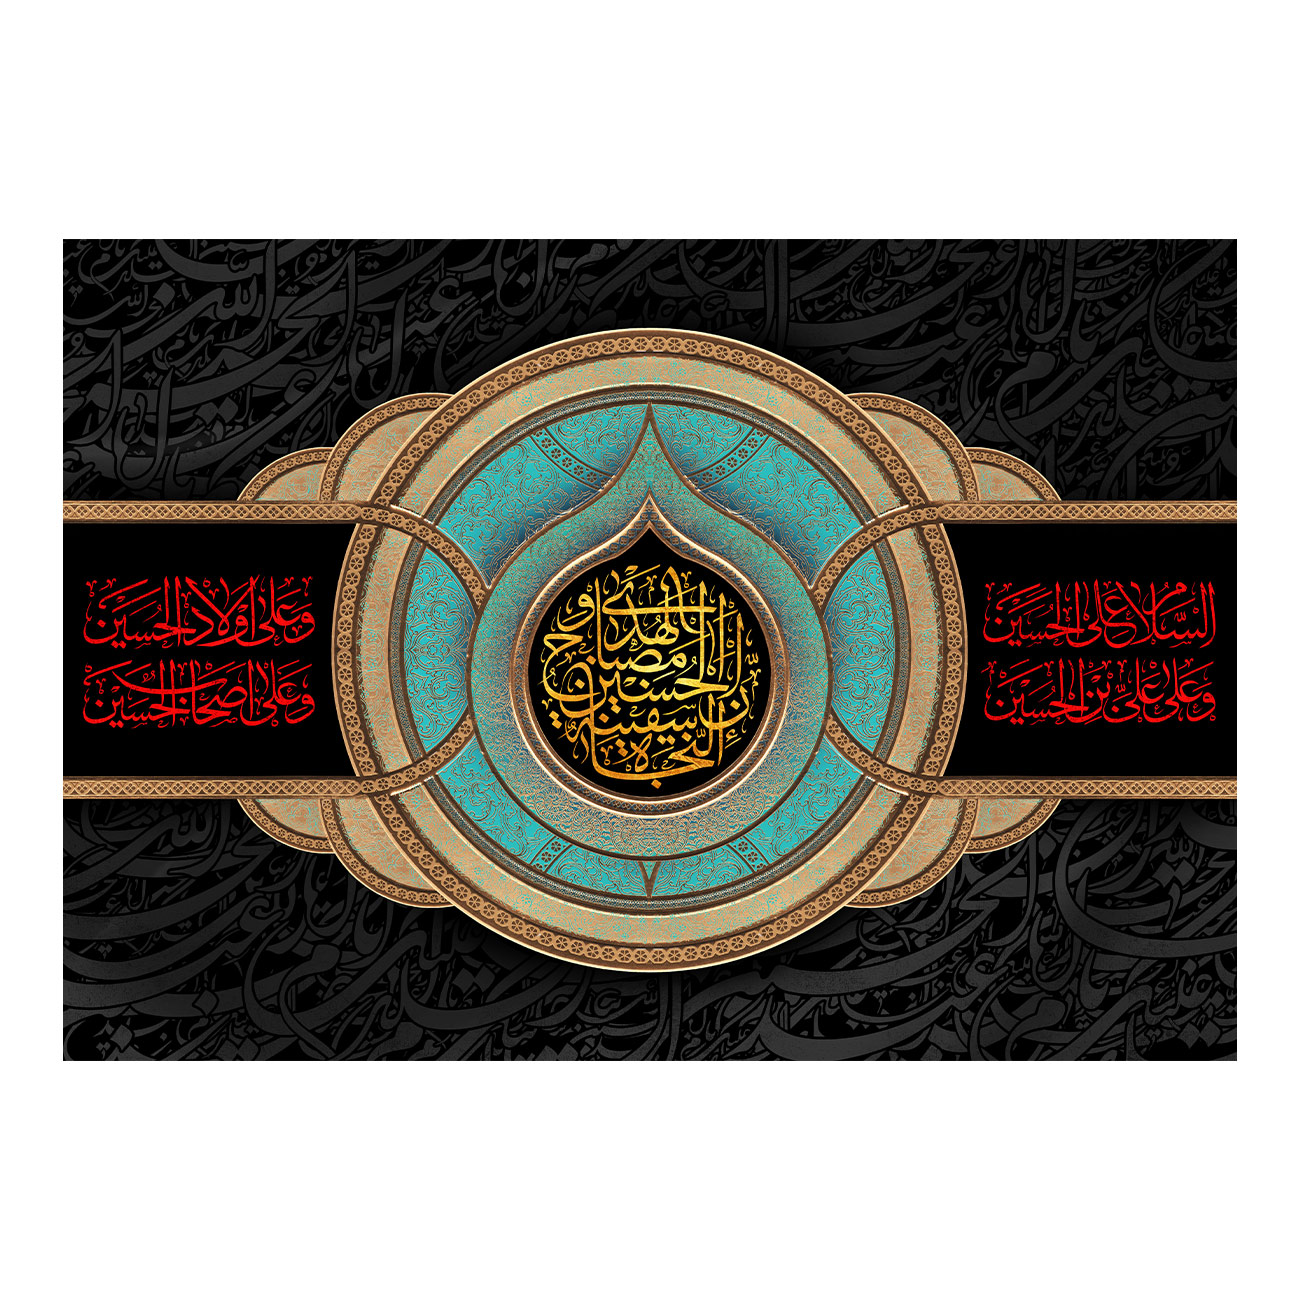   پرچم طرح شهادت مدل امام حسین ع کد 2536H